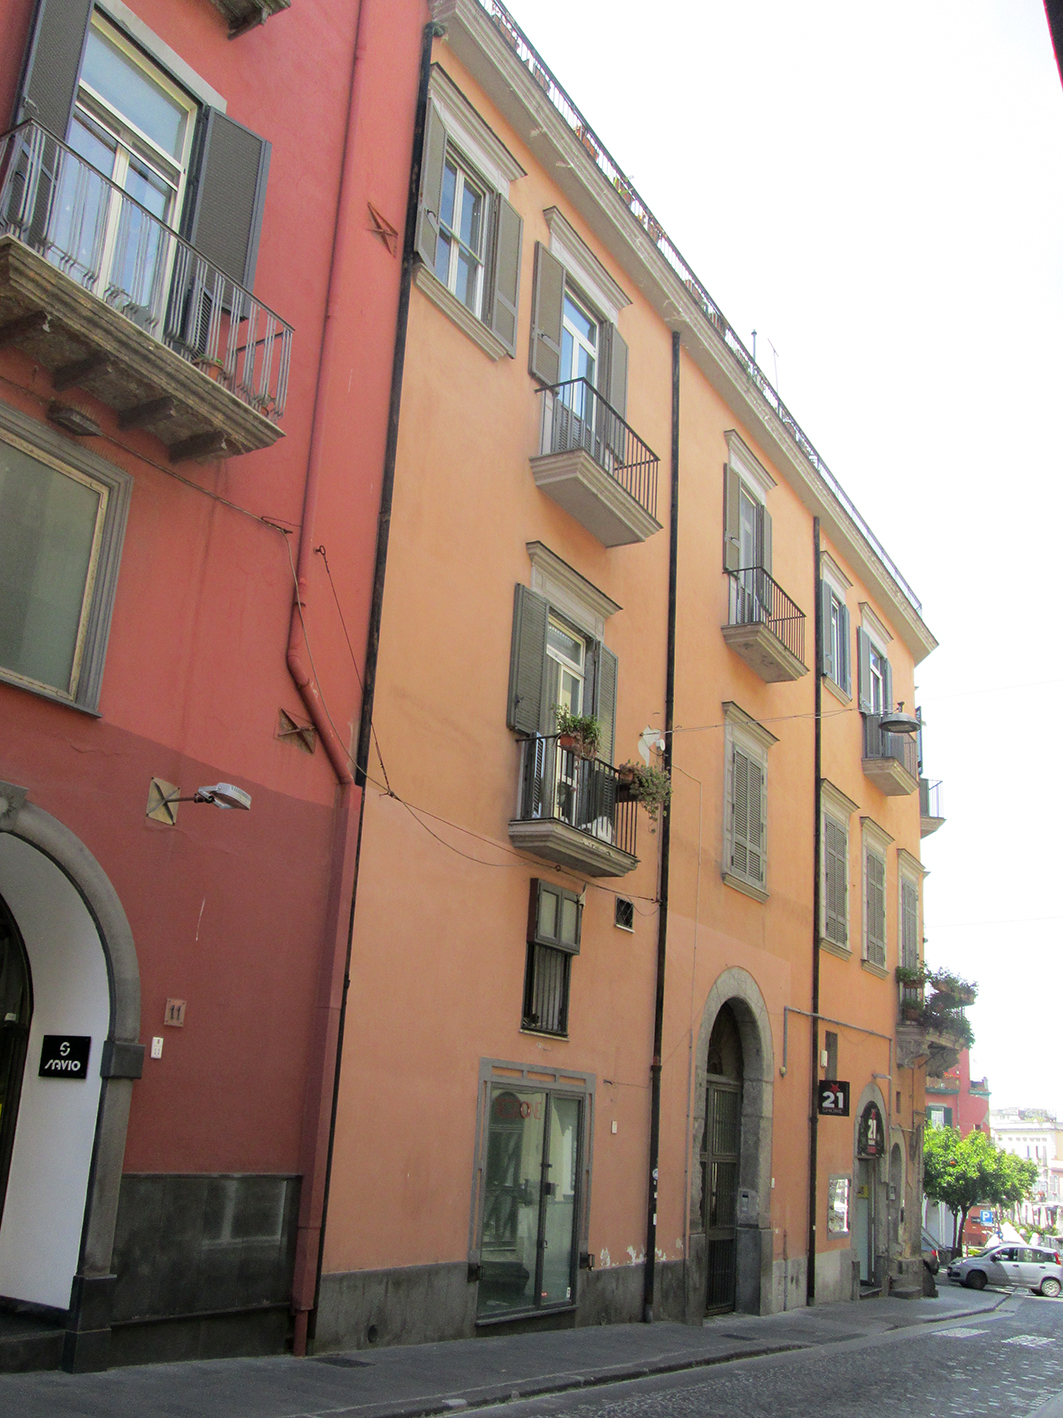 Palazzo Mirabella (palazzo, civico) - Pozzuoli (NA) 